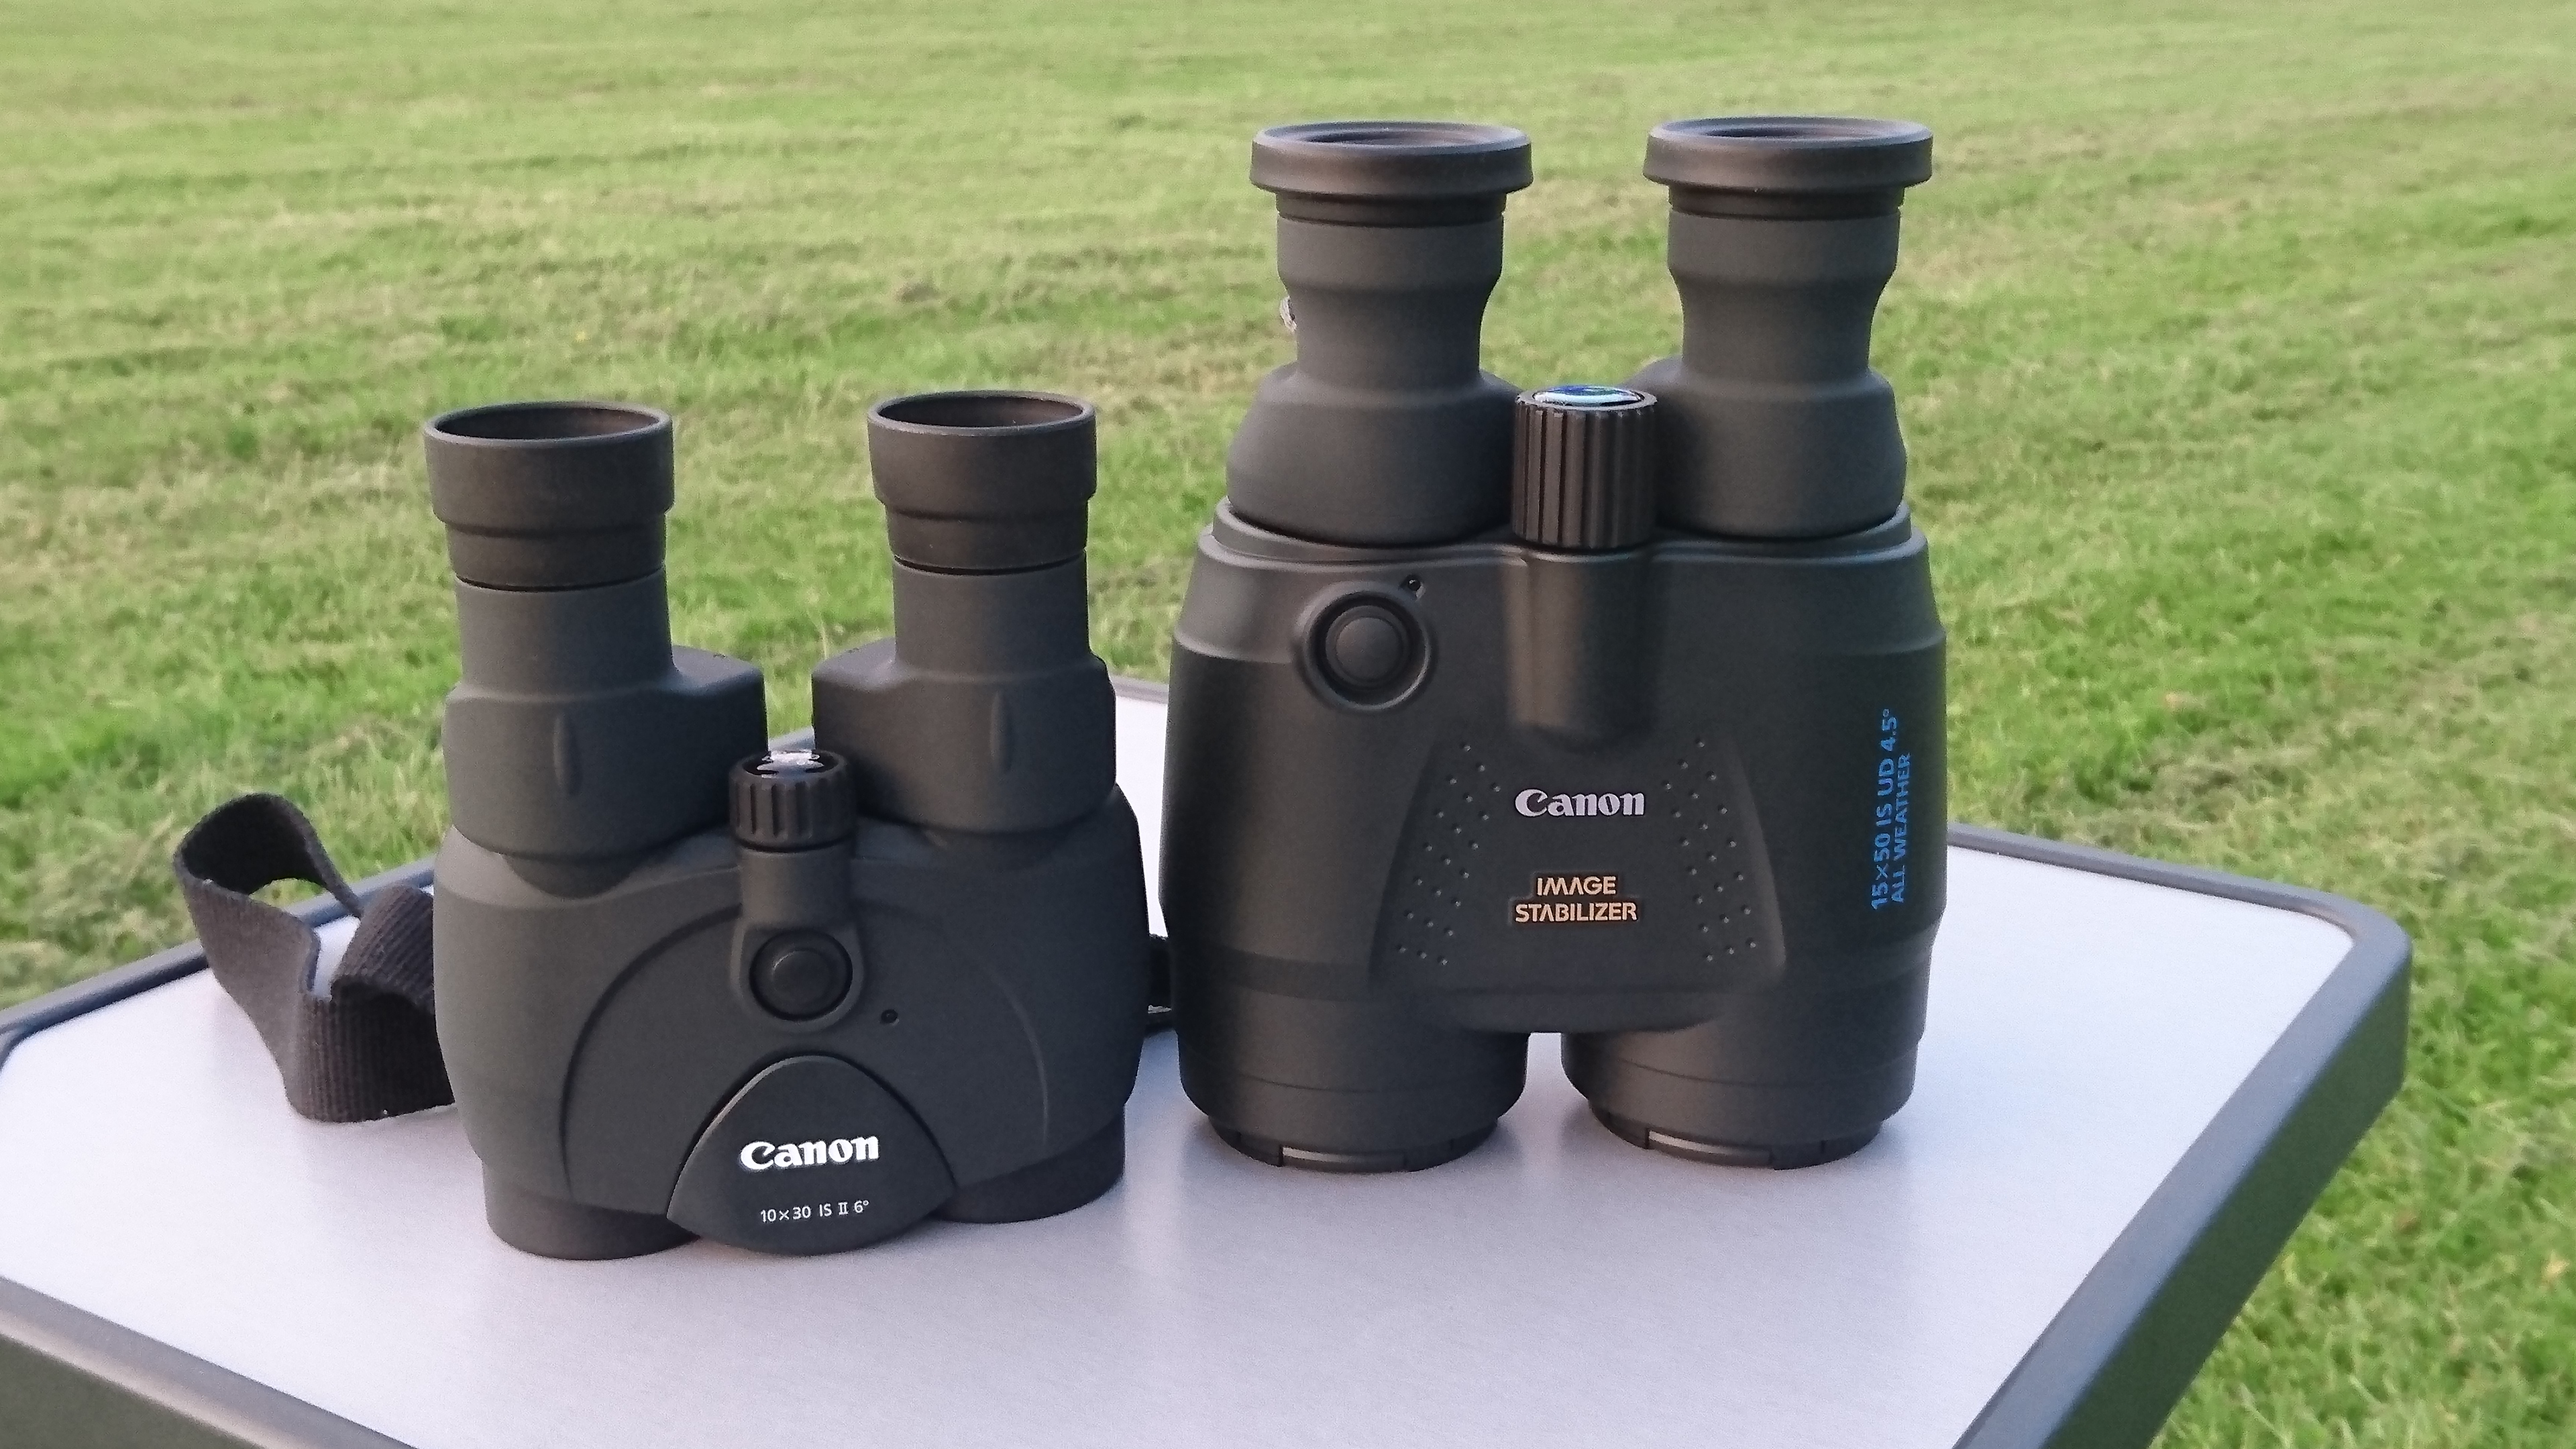 Astronomy Binoculars - Better than Telescopes for Beginners?